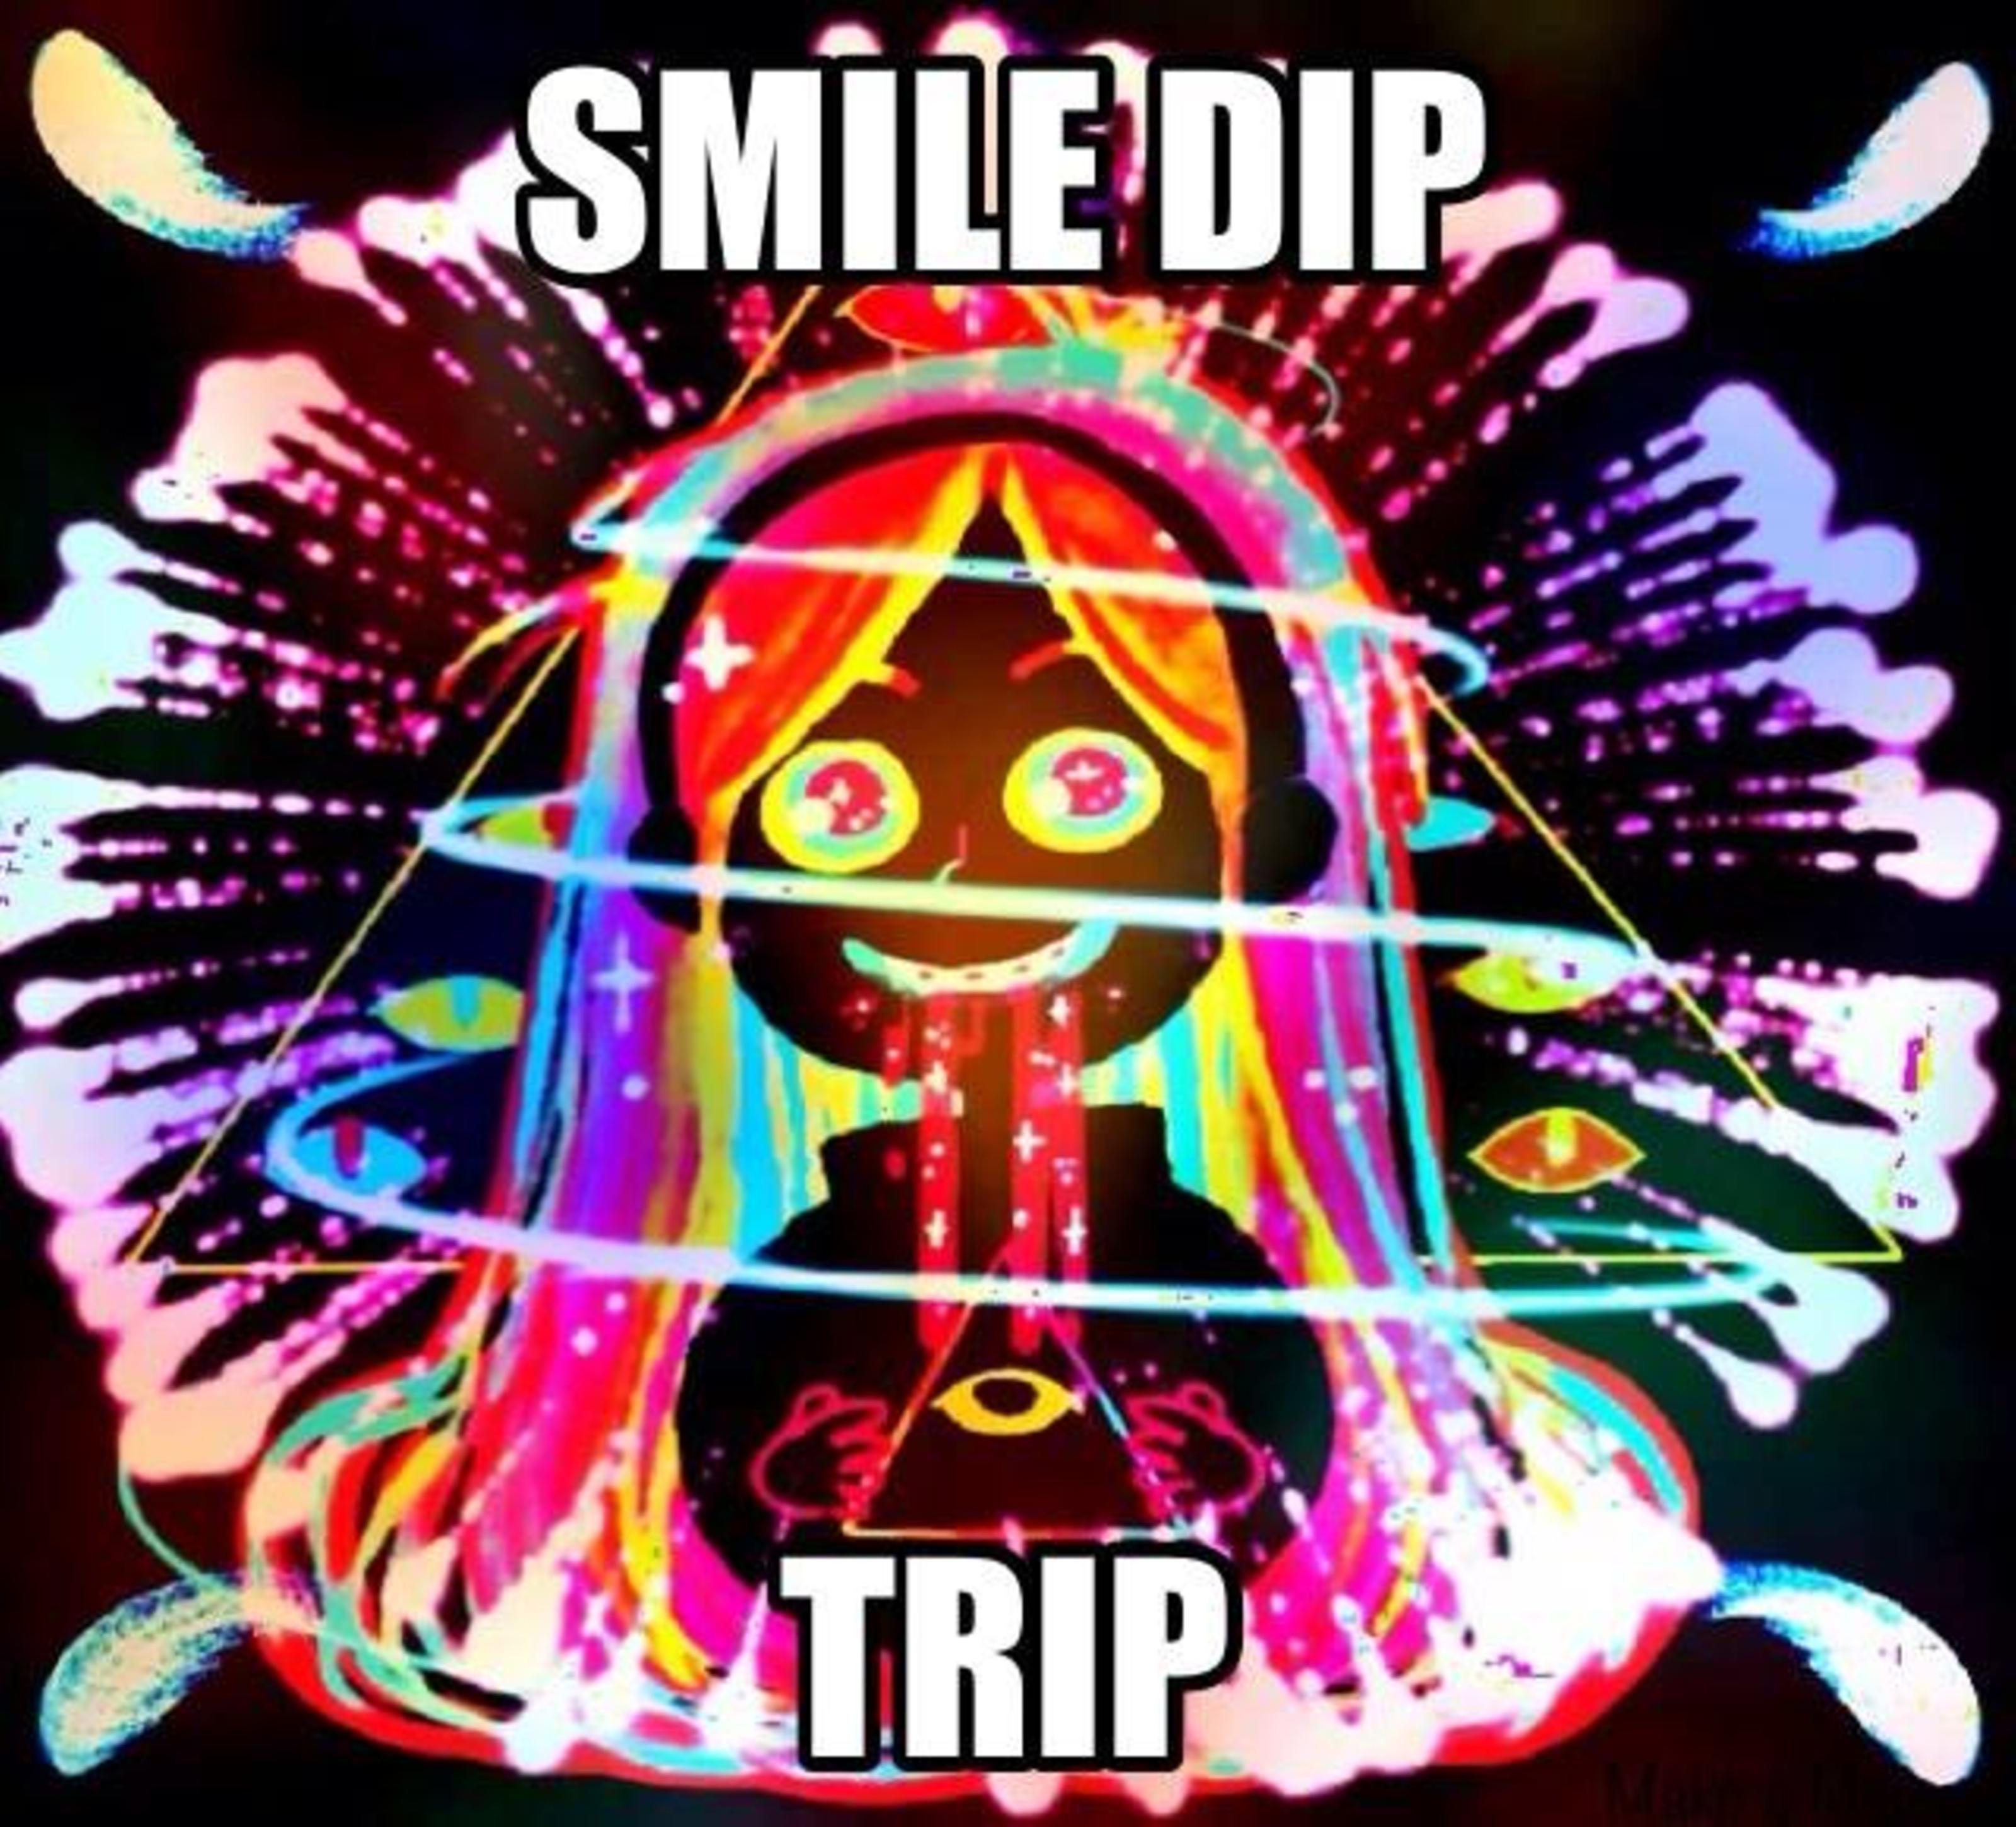 smile dip trip